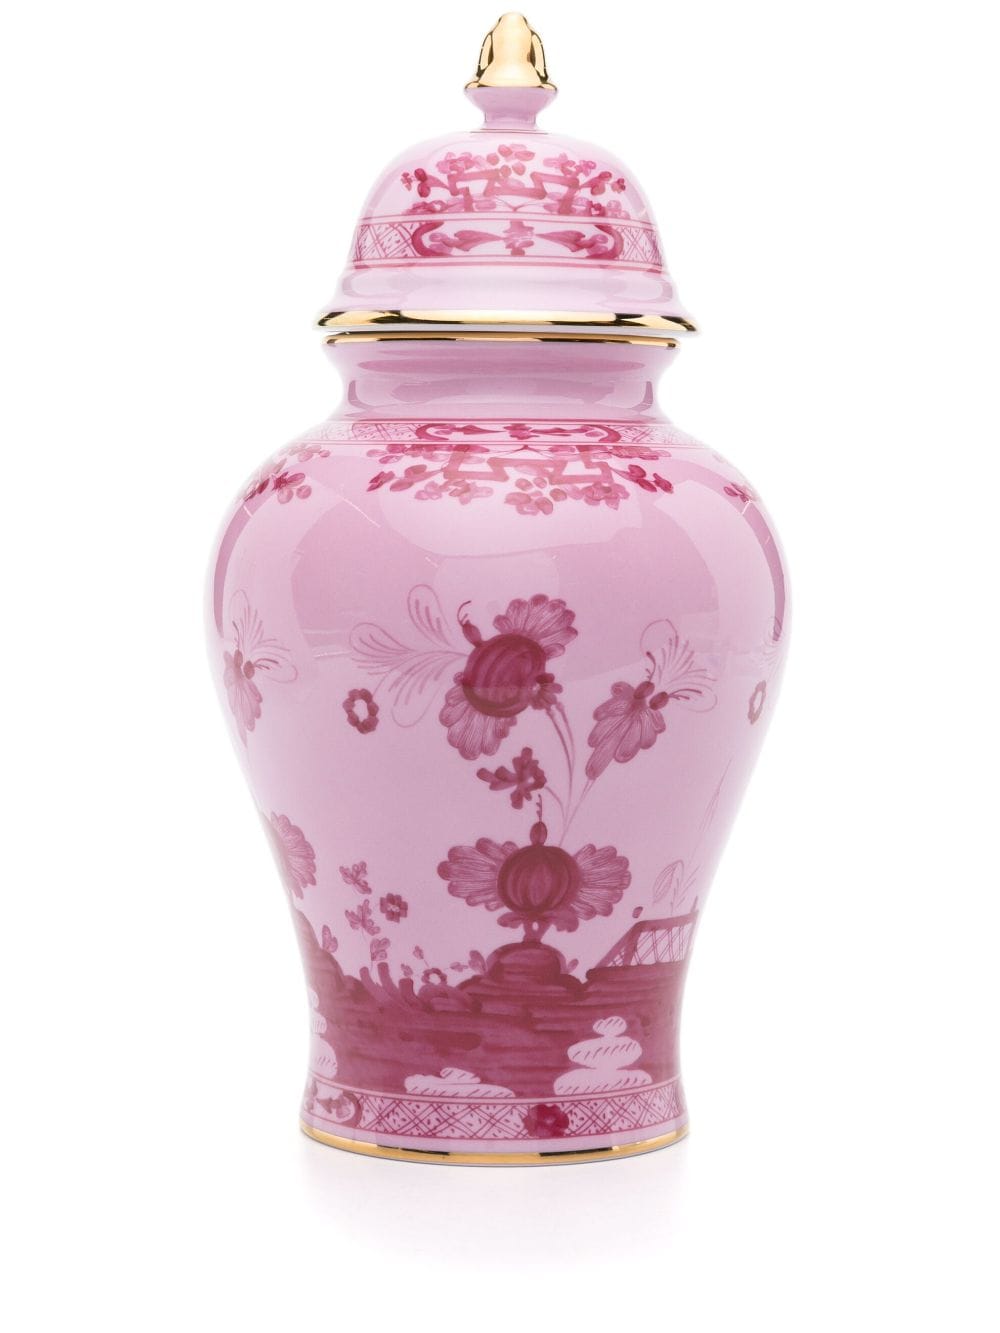 GINORI 1735 Oriente Italiano potiche vase with cover (31cm) - Pink